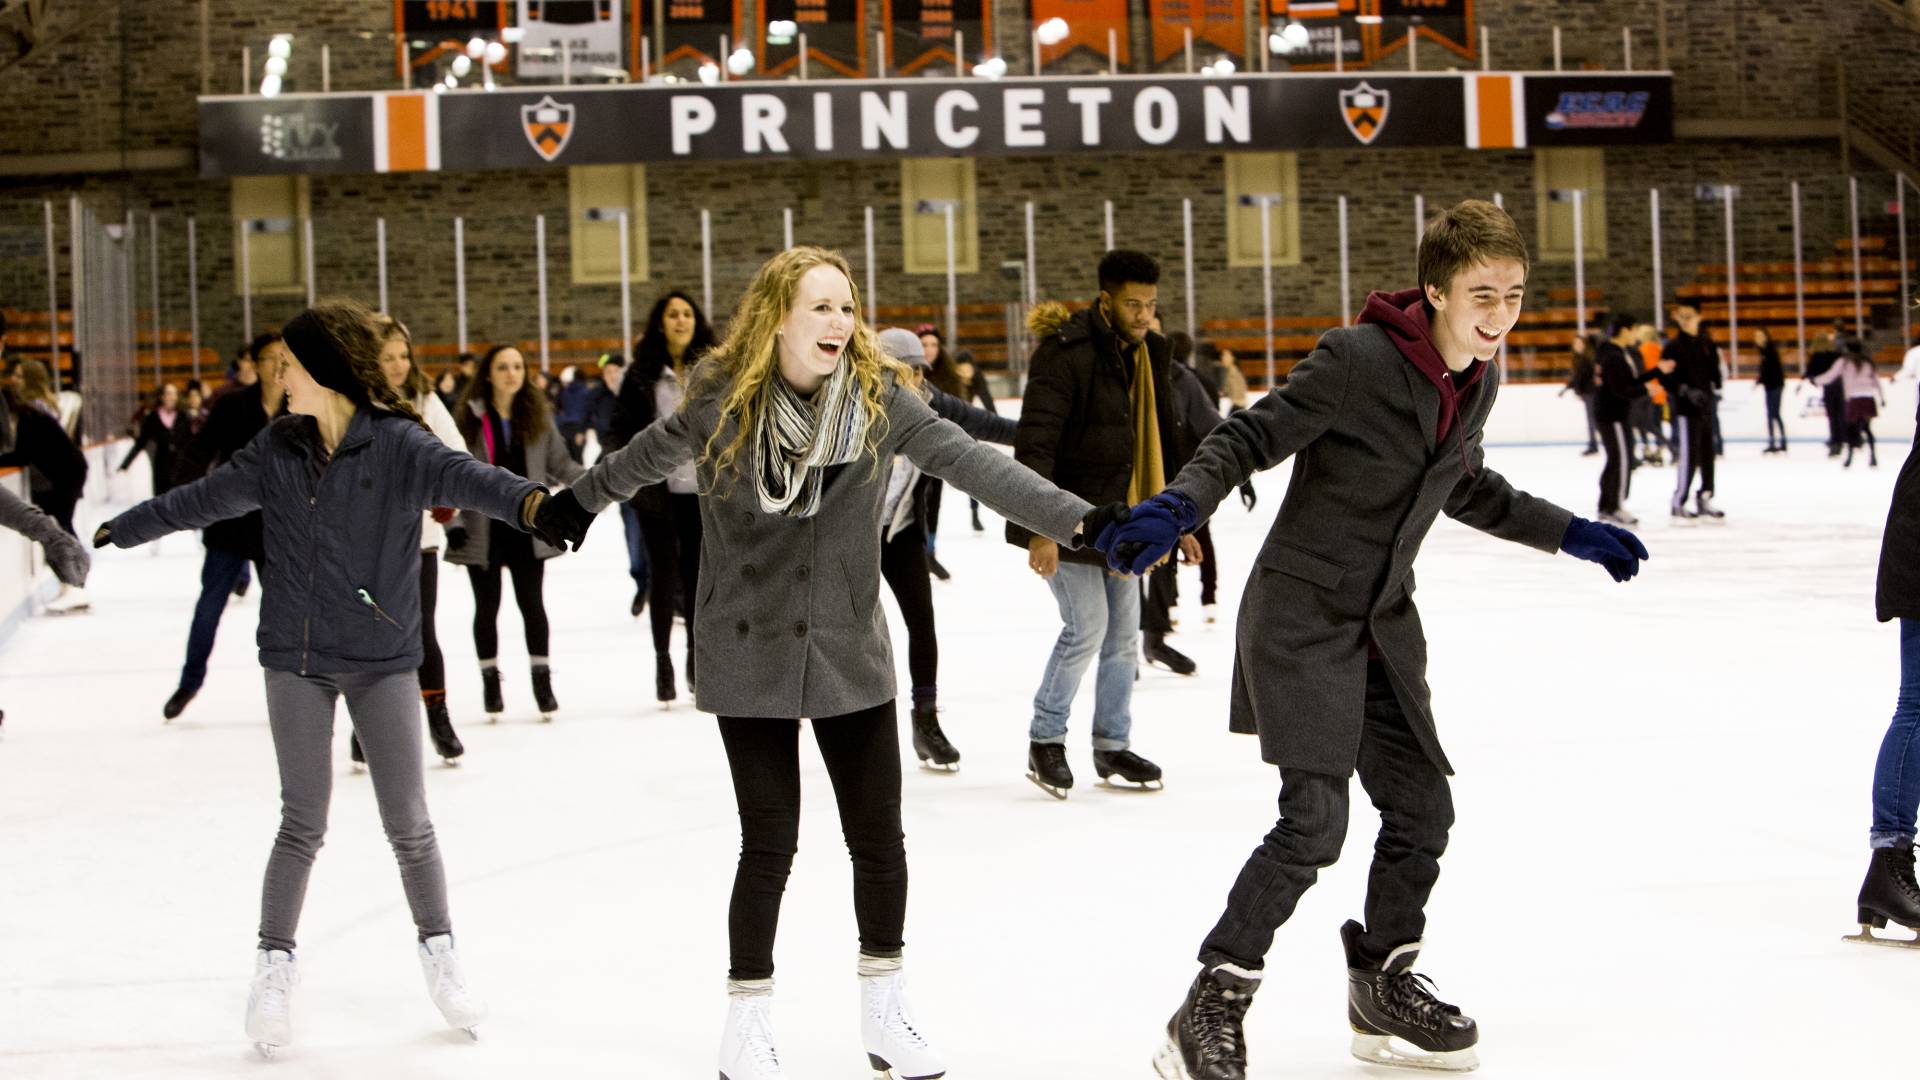 Students skating at Baker Rink